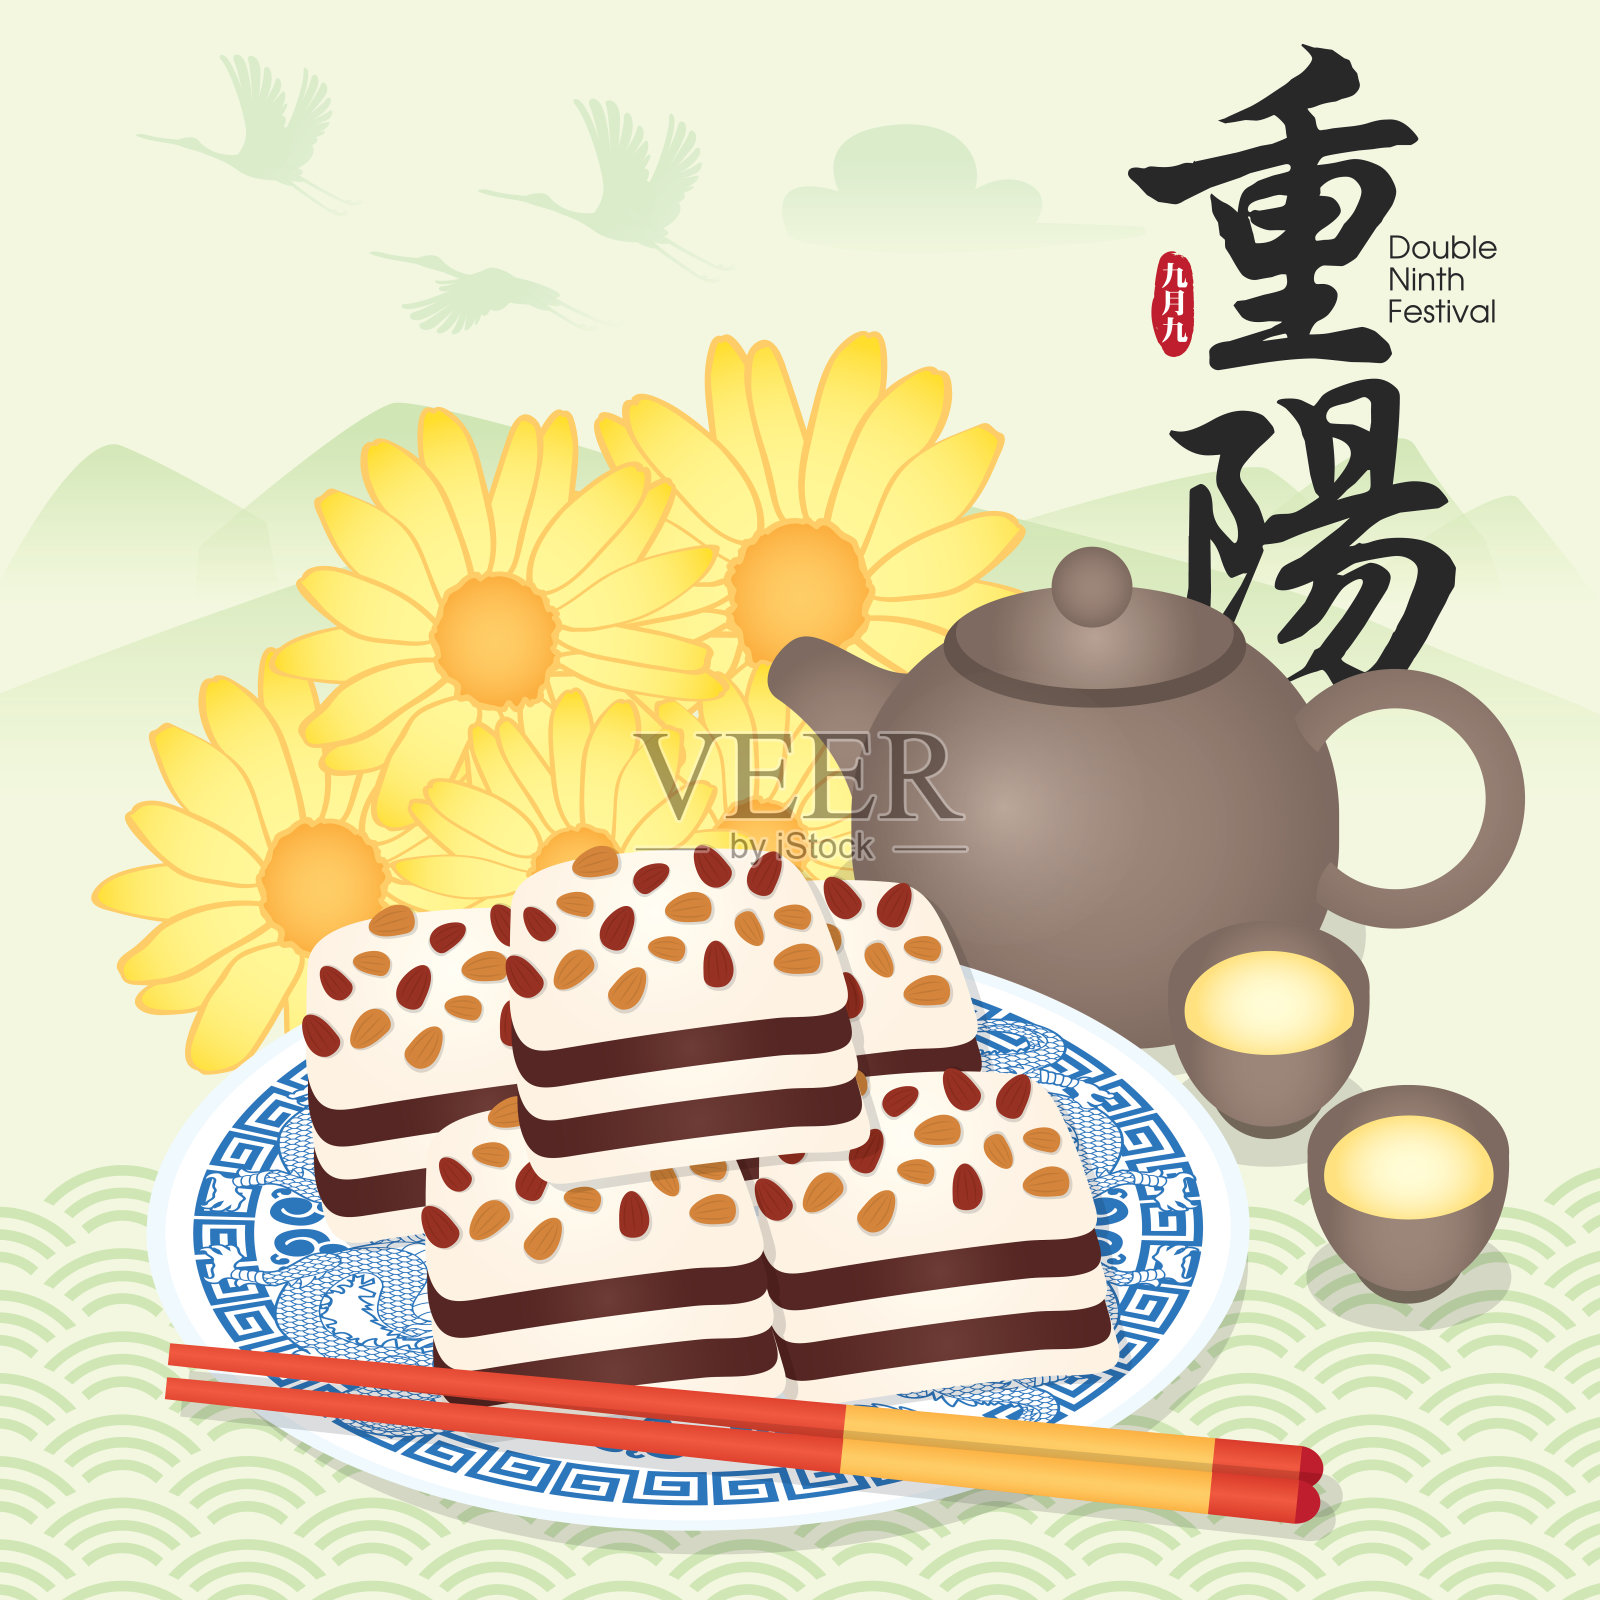 重阳节/重阳节贺词插图以传统食物和中国背景。(翻译:重阳节。)设计模板素材